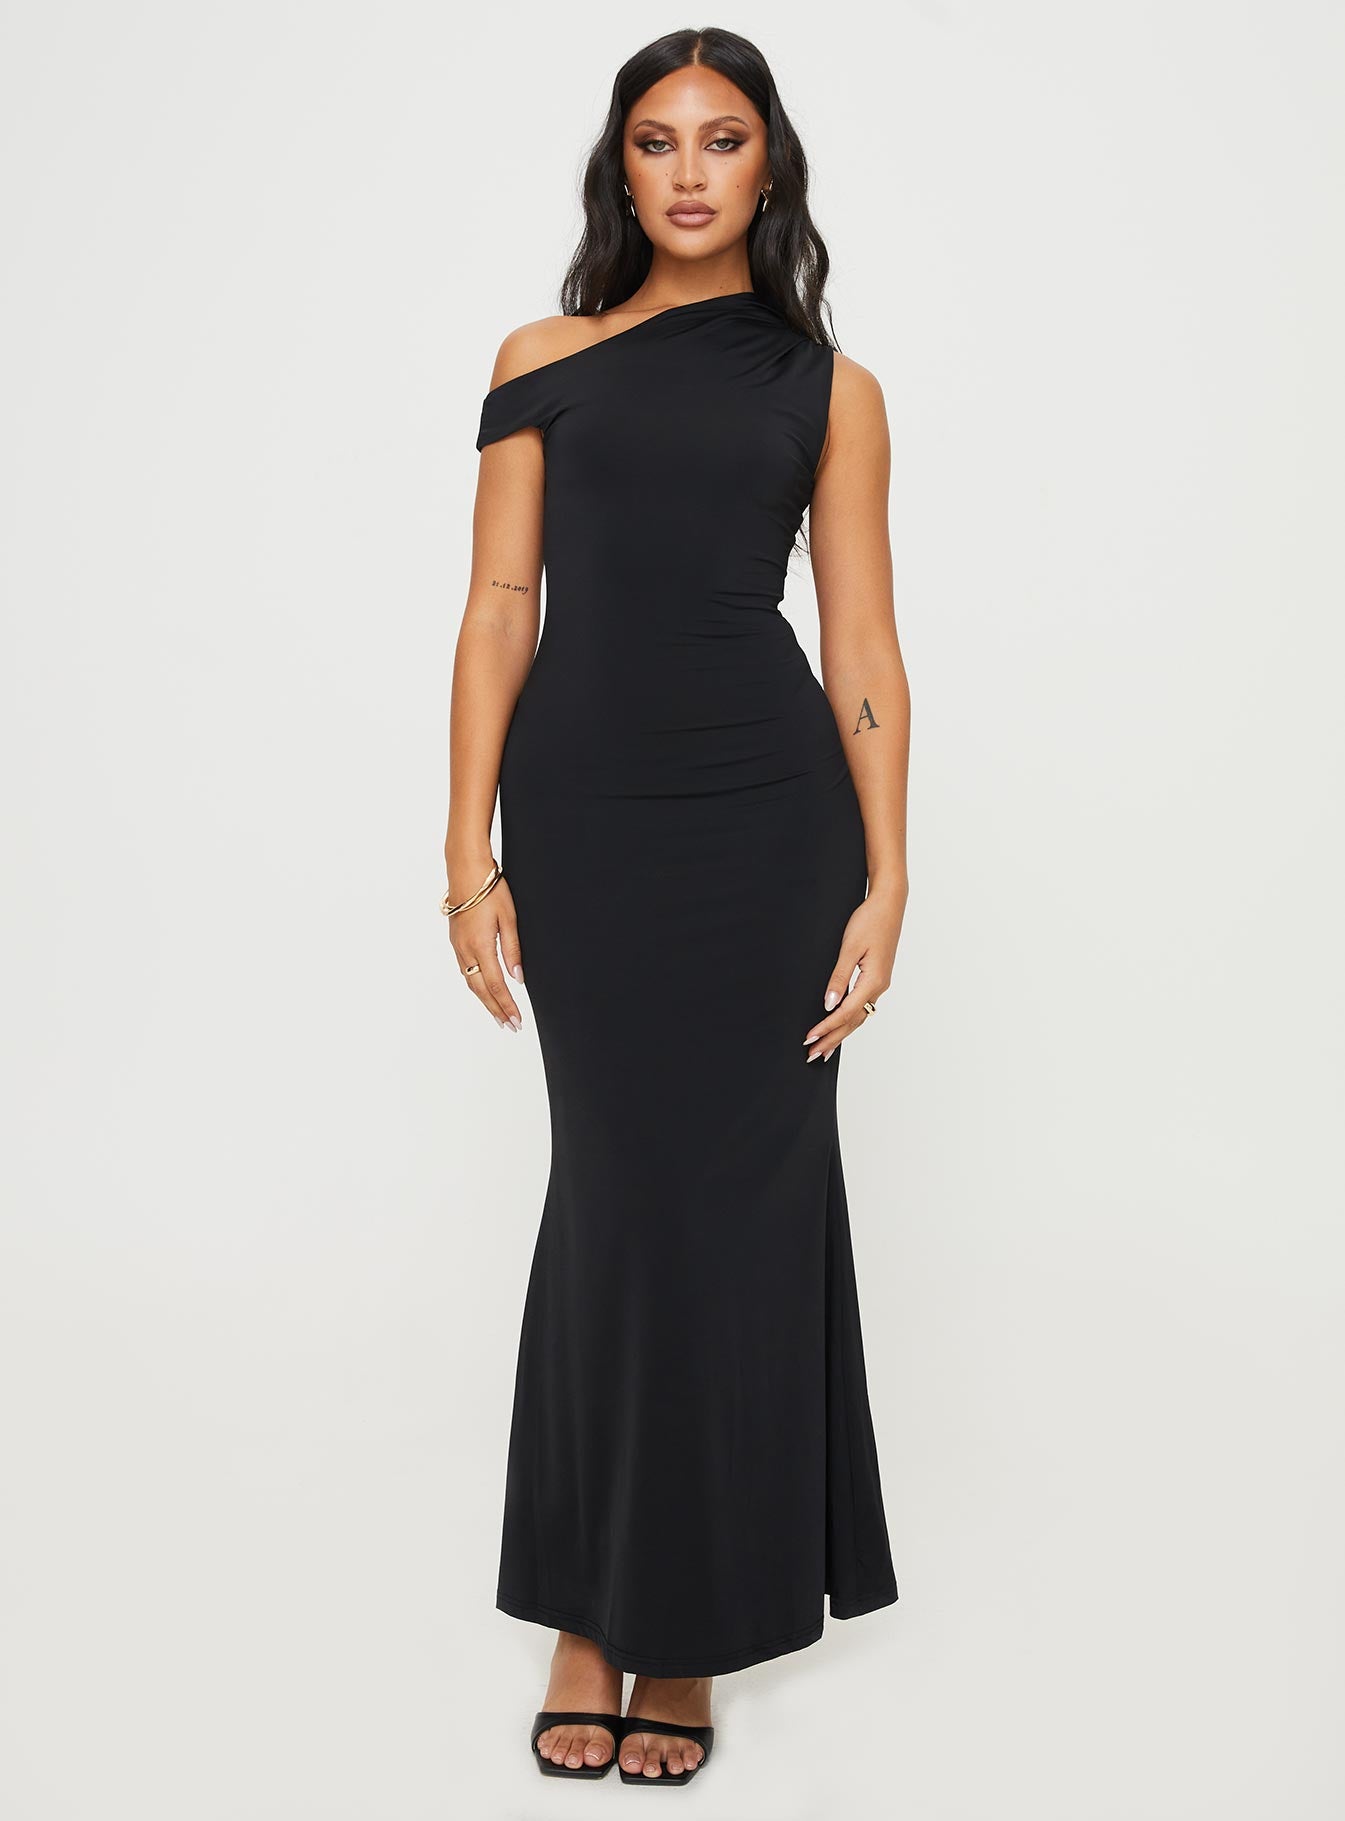 Shop Formal Dress - Beller Maxi Dress Black fifth image